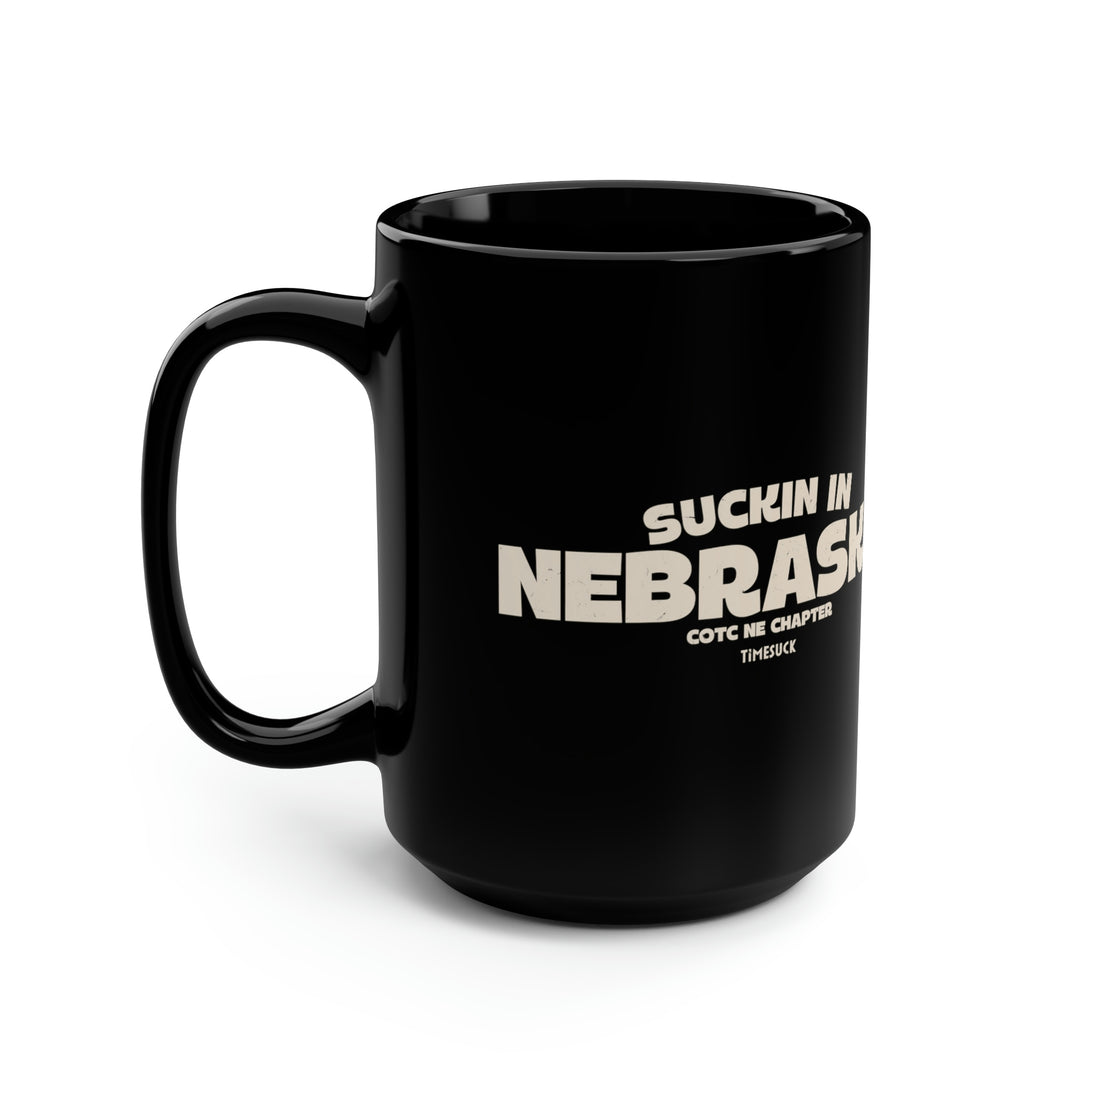 Nebraska Cult Mug